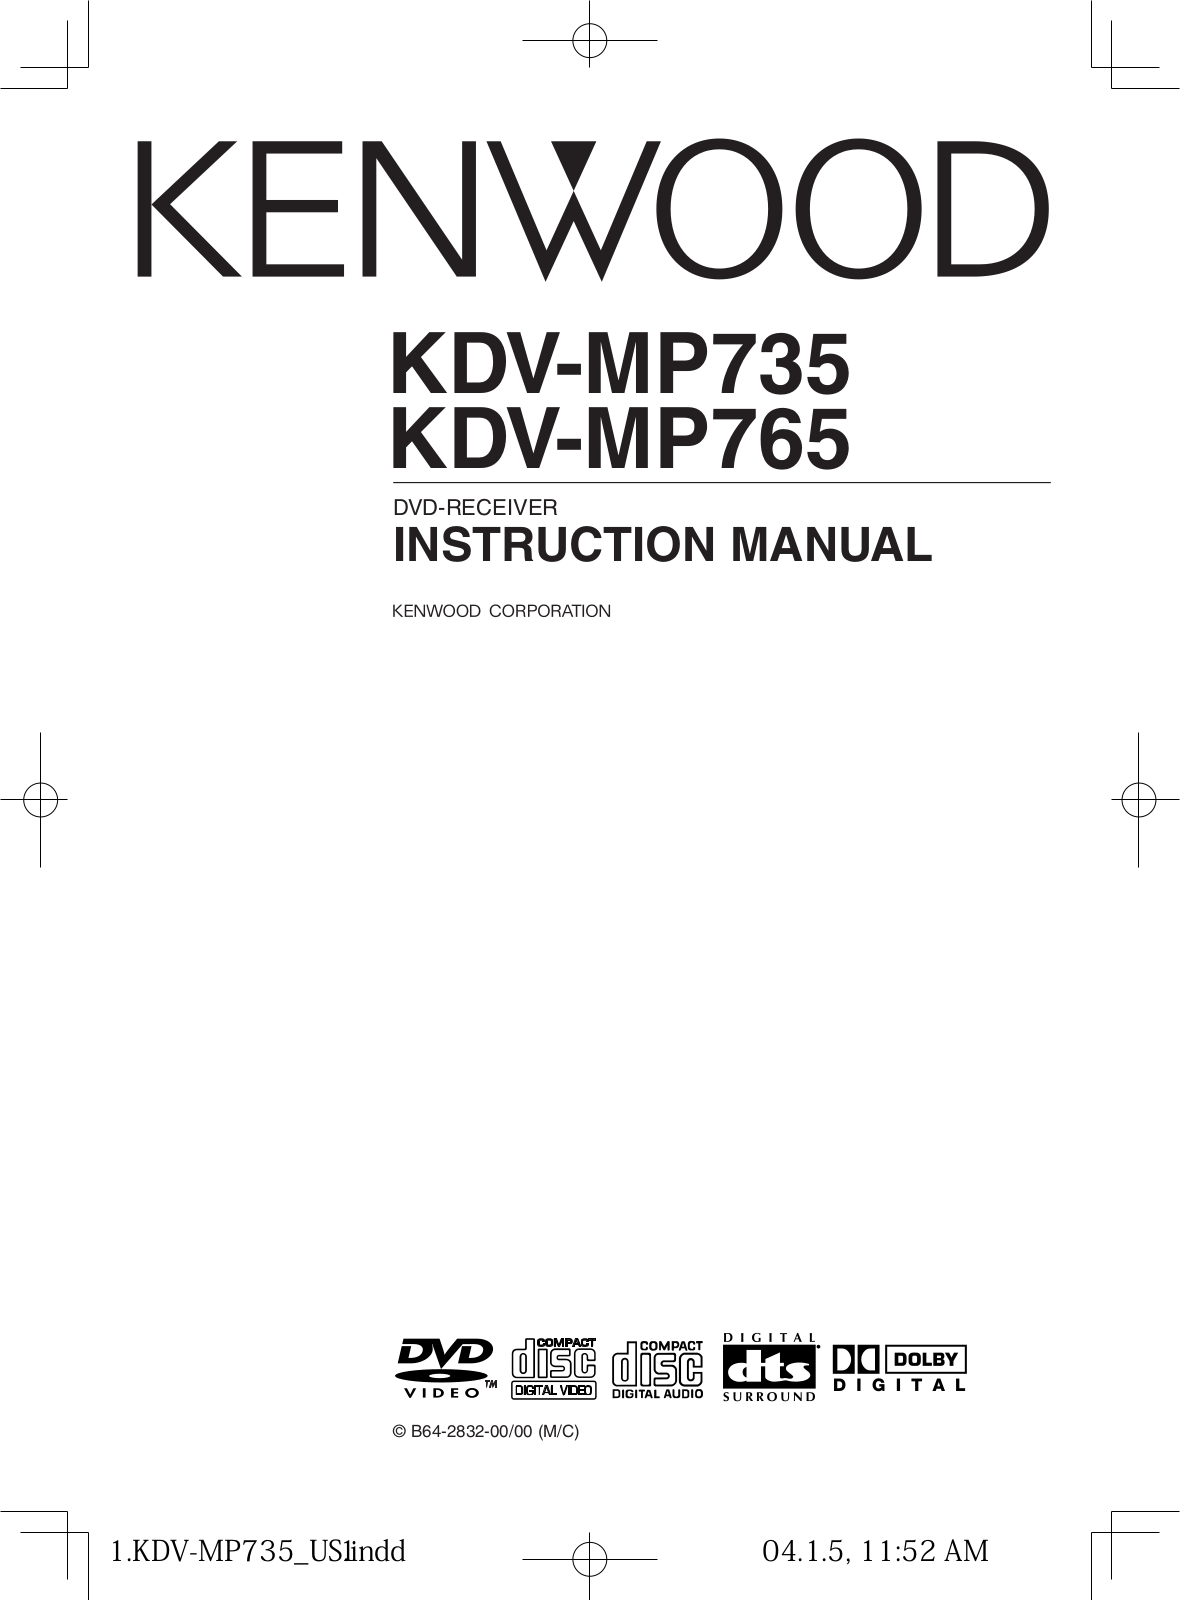 Kenwood KDV-MP765, KDV-MP735 User Manual